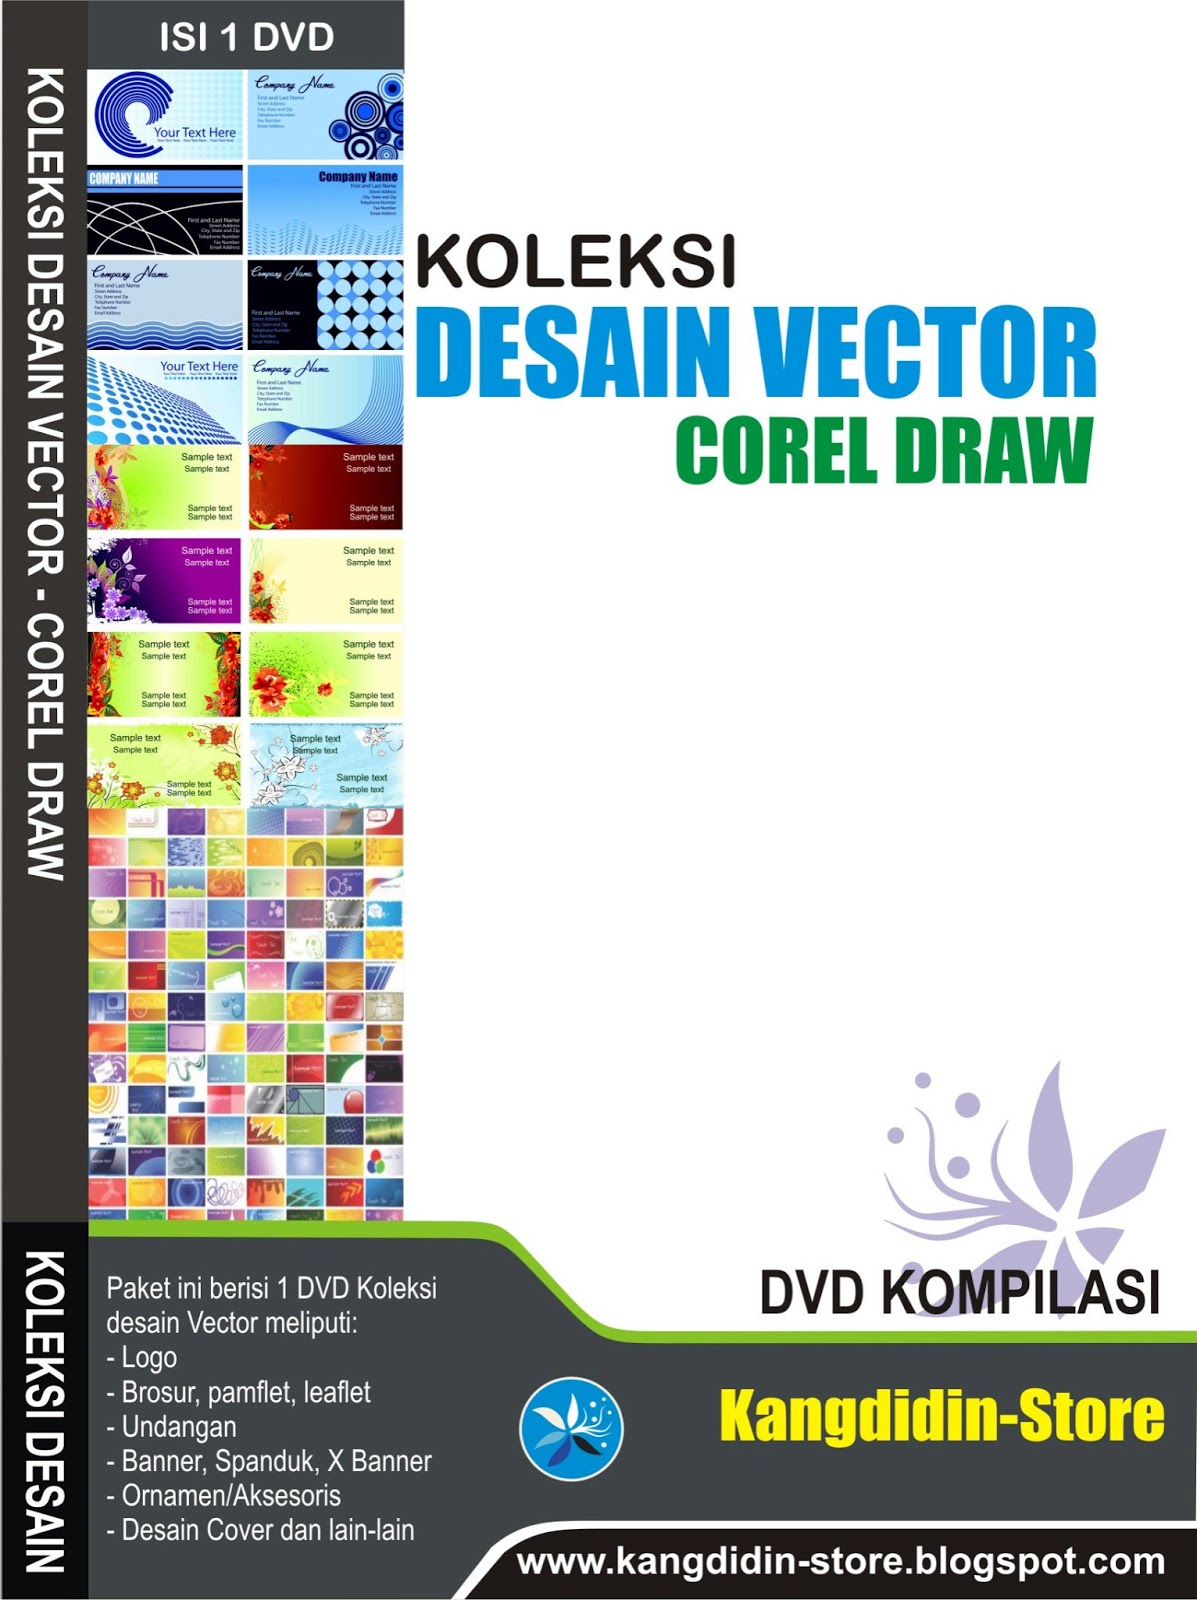 Koleksi Desain Vector Corel Draw